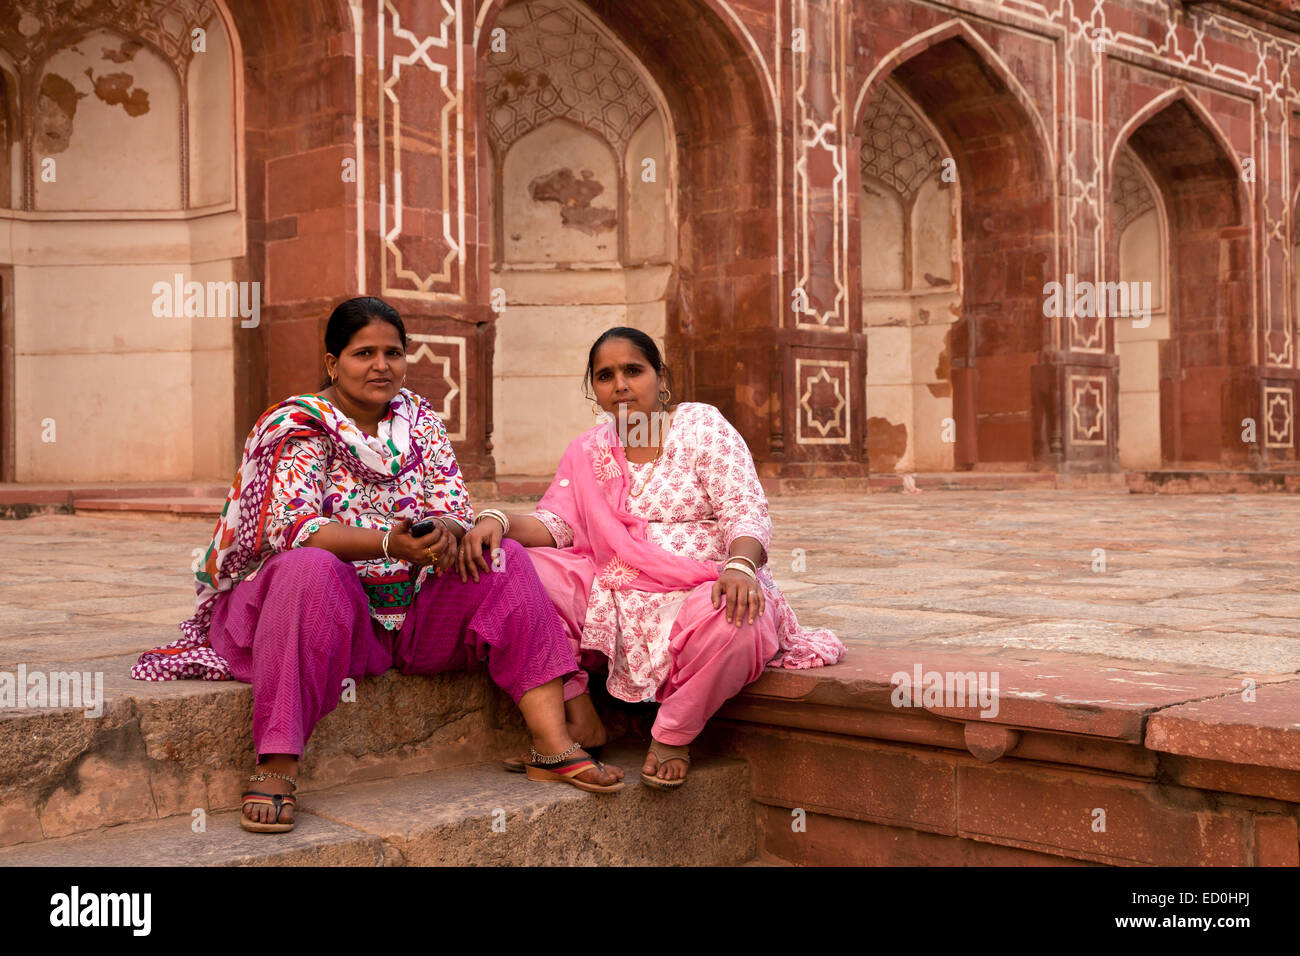 Indian donna seduta all'ingresso per la tomba di Humayun, patrimonio mondiale dell UNESCO a Delhi, India, Asia Foto Stock